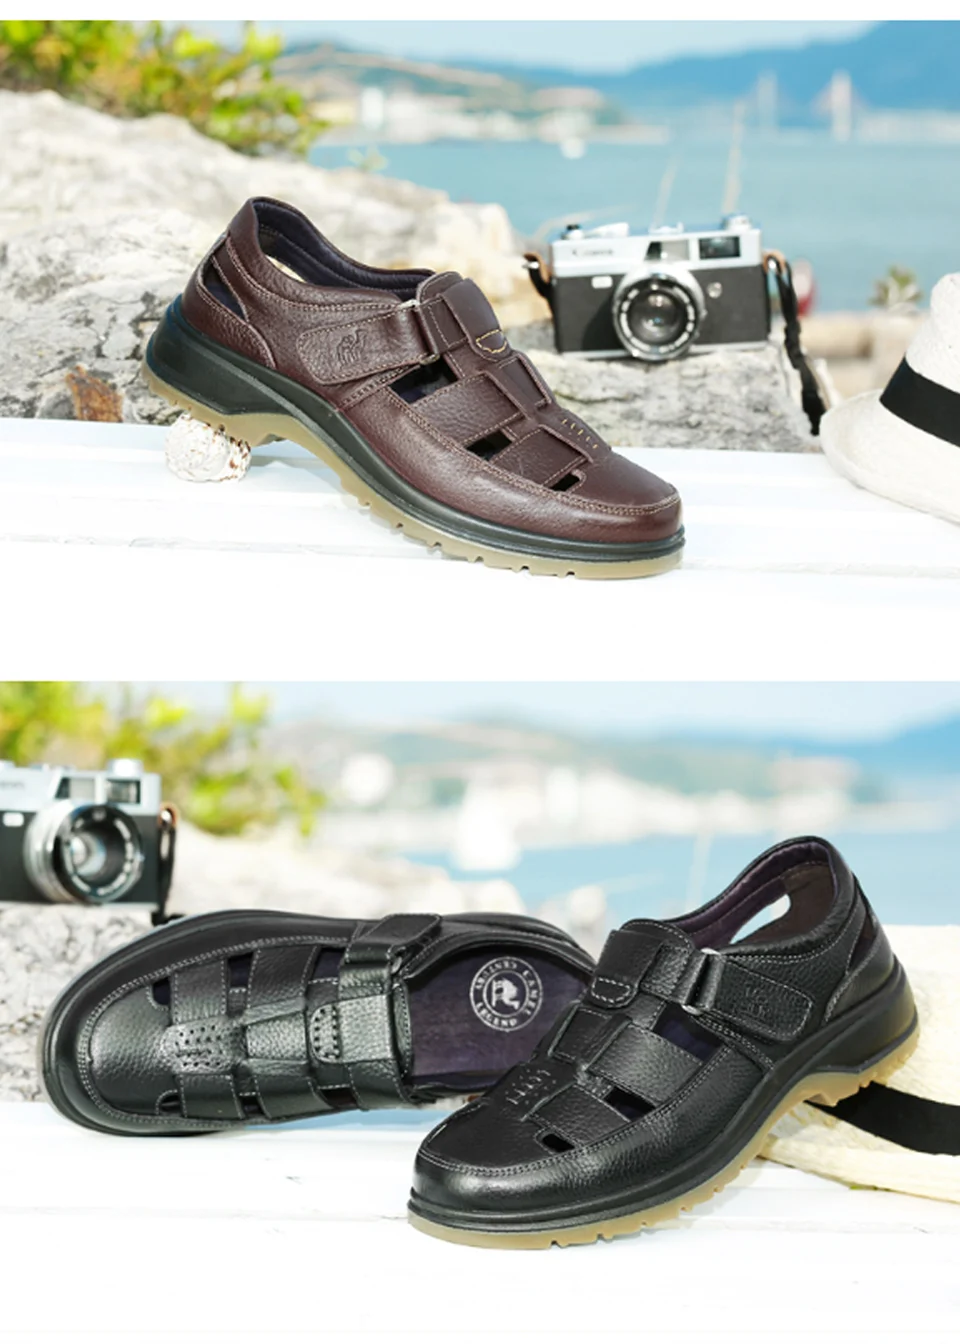 CAMEL/мужские сандалии высокого качества; Мужская обувь из натуральной кожи; мягкие мужские сандалии в деловом стиле; повседневные пляжные туфли для папы двойного назначения